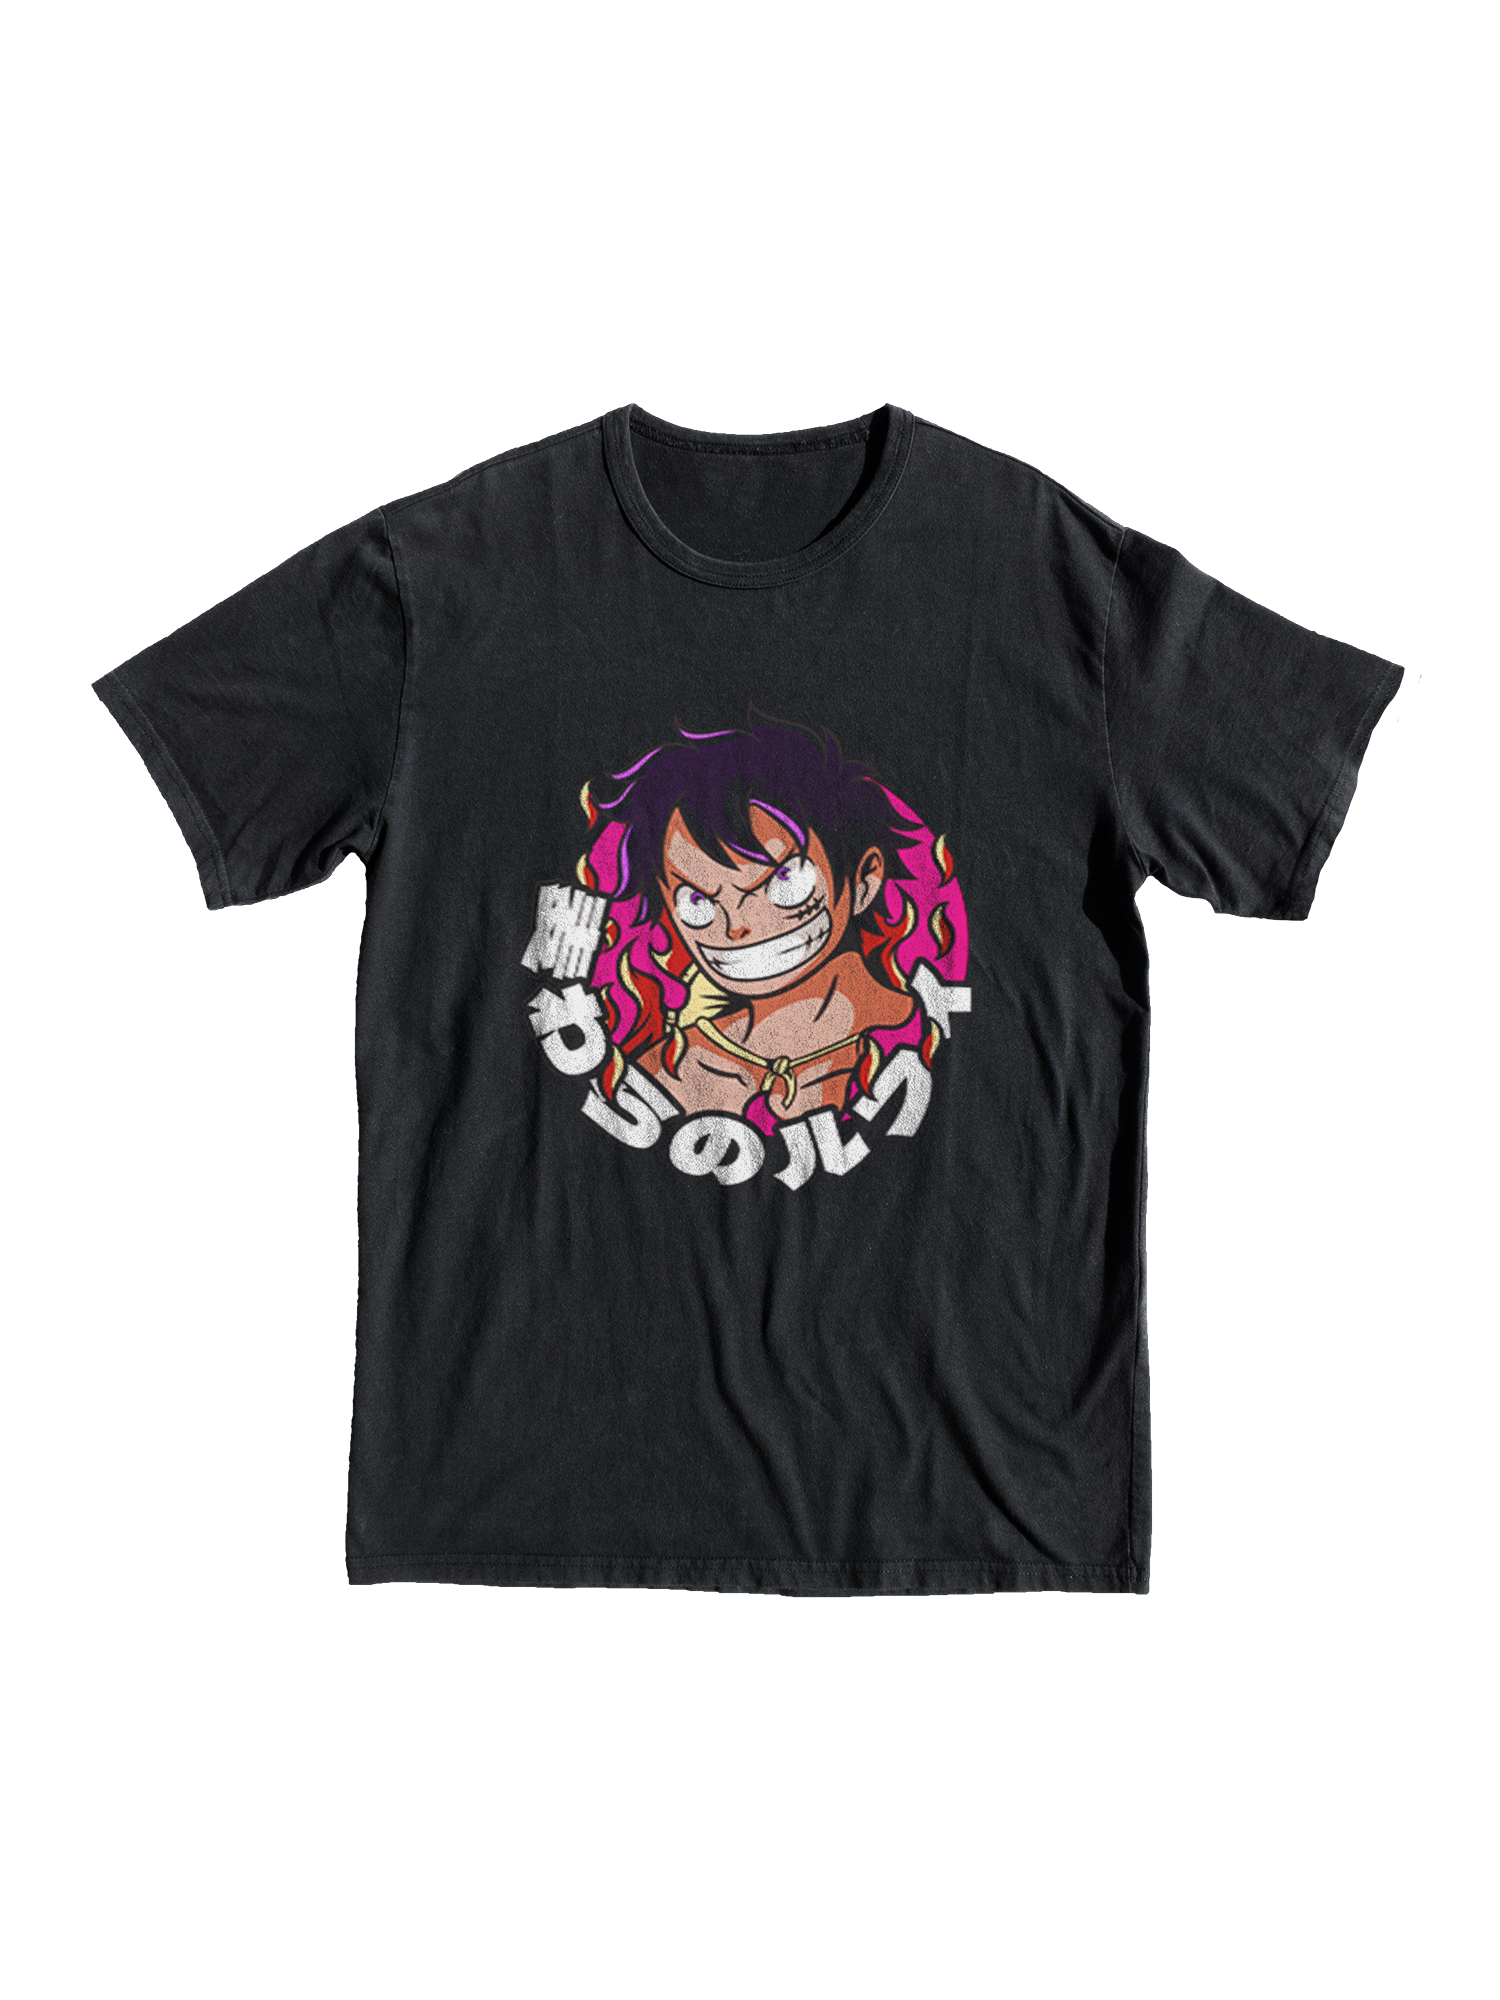 T-Shirt One Piece Enfant | One Piece Shop